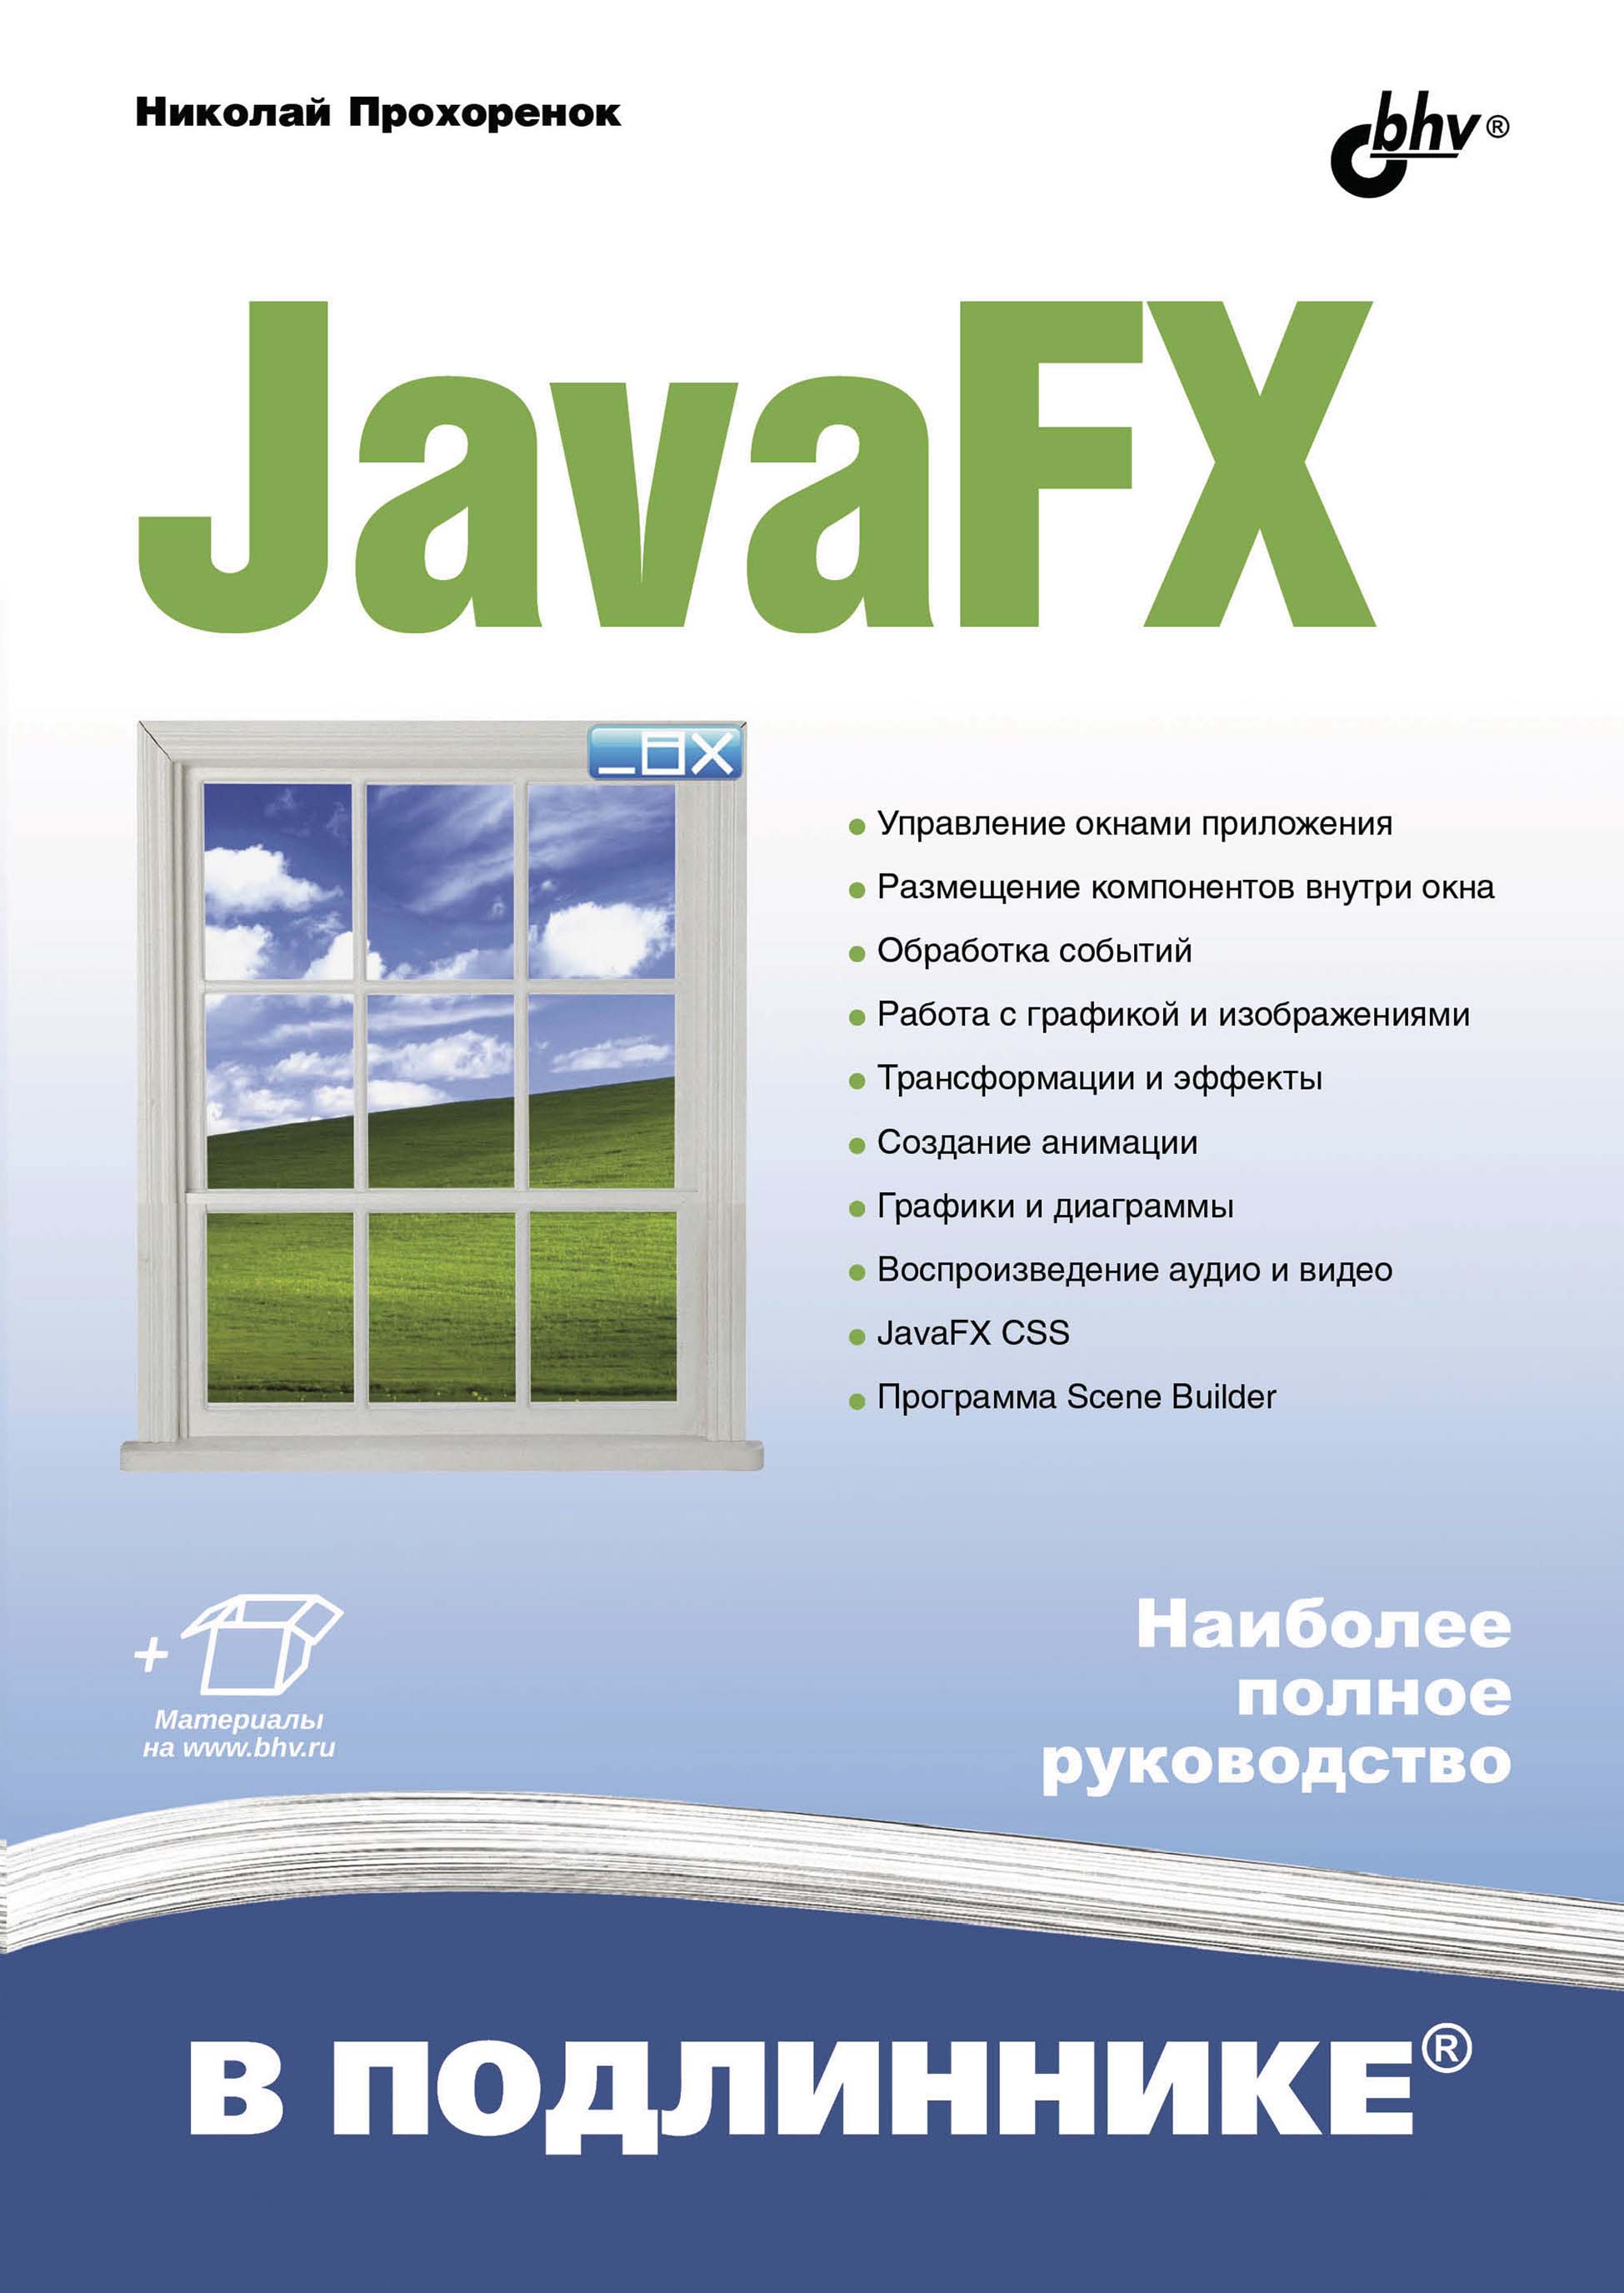 Книга В подлиннике. Наиболее полное руководство JavaFX созданная Николай Прохоренок может относится к жанру программирование, руководства. Стоимость электронной книги JavaFX с идентификатором 66338198 составляет 449.00 руб.